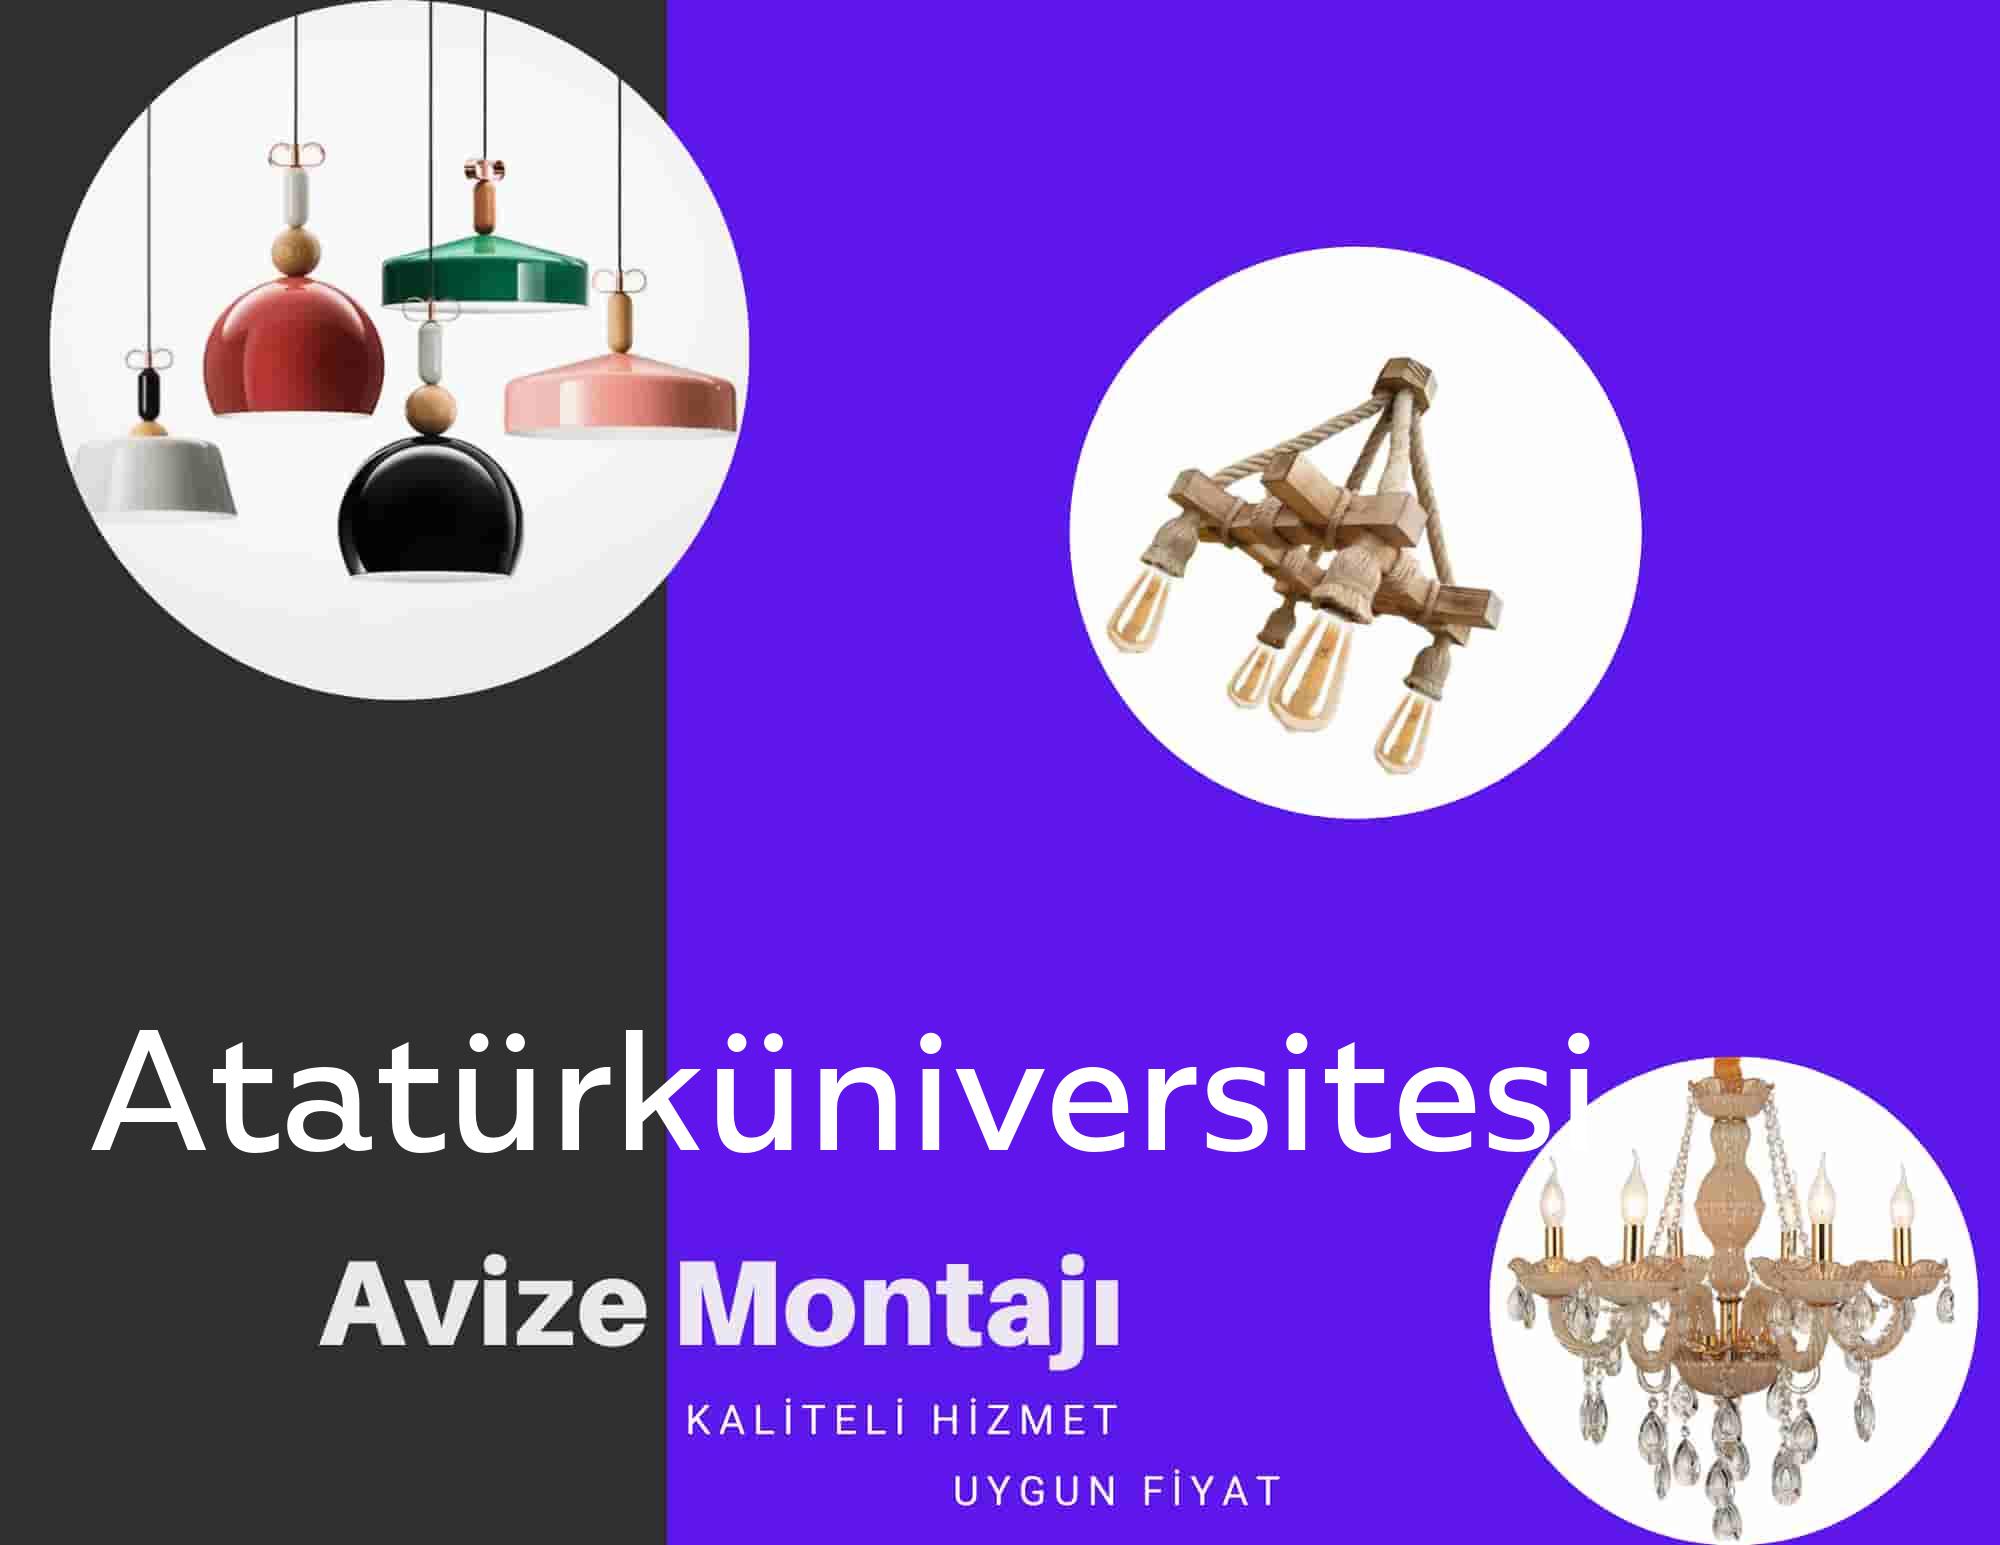 Atatürküniversiteside avize montajı yapan yerler arıyorsanız elektrikcicagir anında size profesyonel avize montajı ustasını yönlendirir.